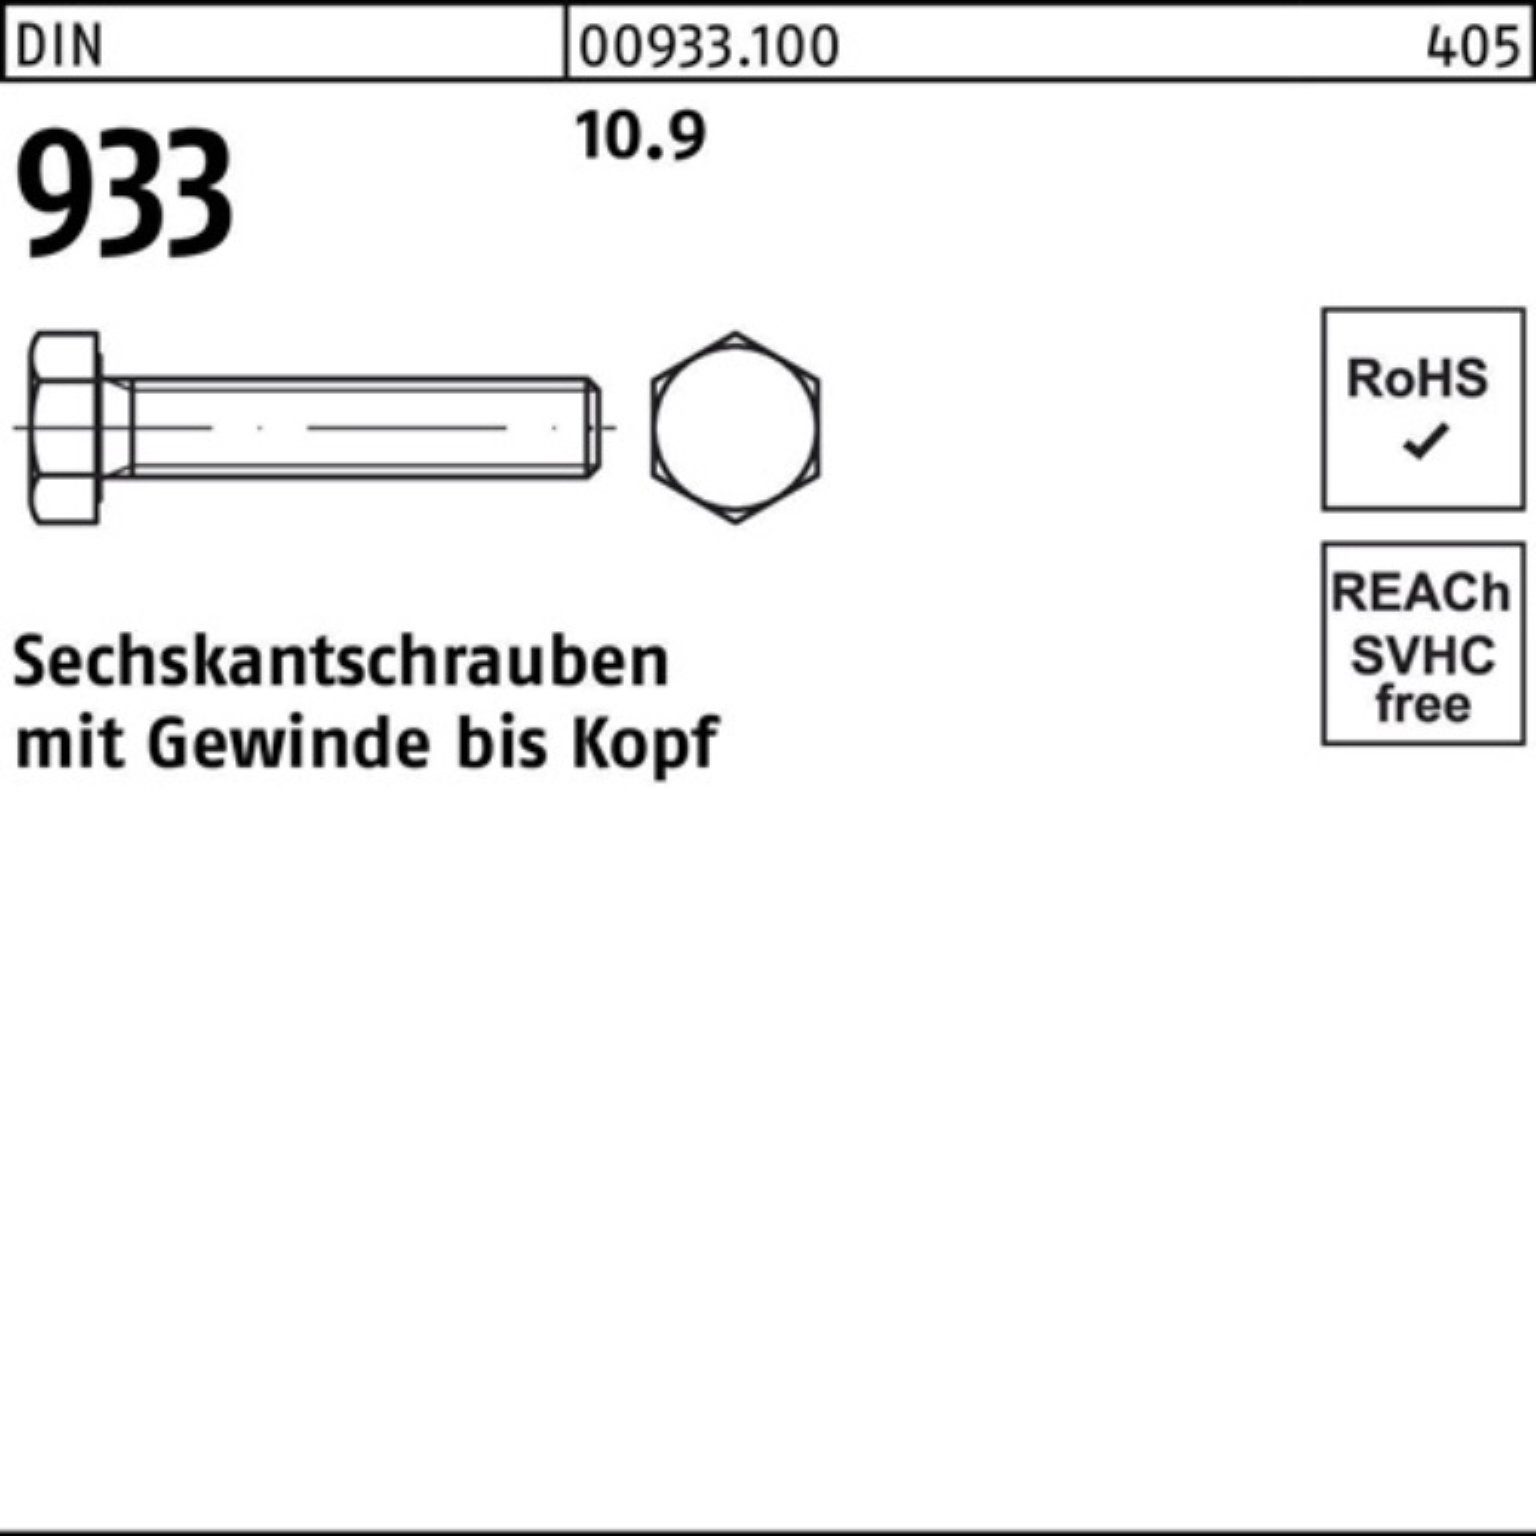 100er DIN Sechskantschraube 10.9 Pack 933 933 Sechskantschraube 25 DIN 75 Stück VG Reyher M20x